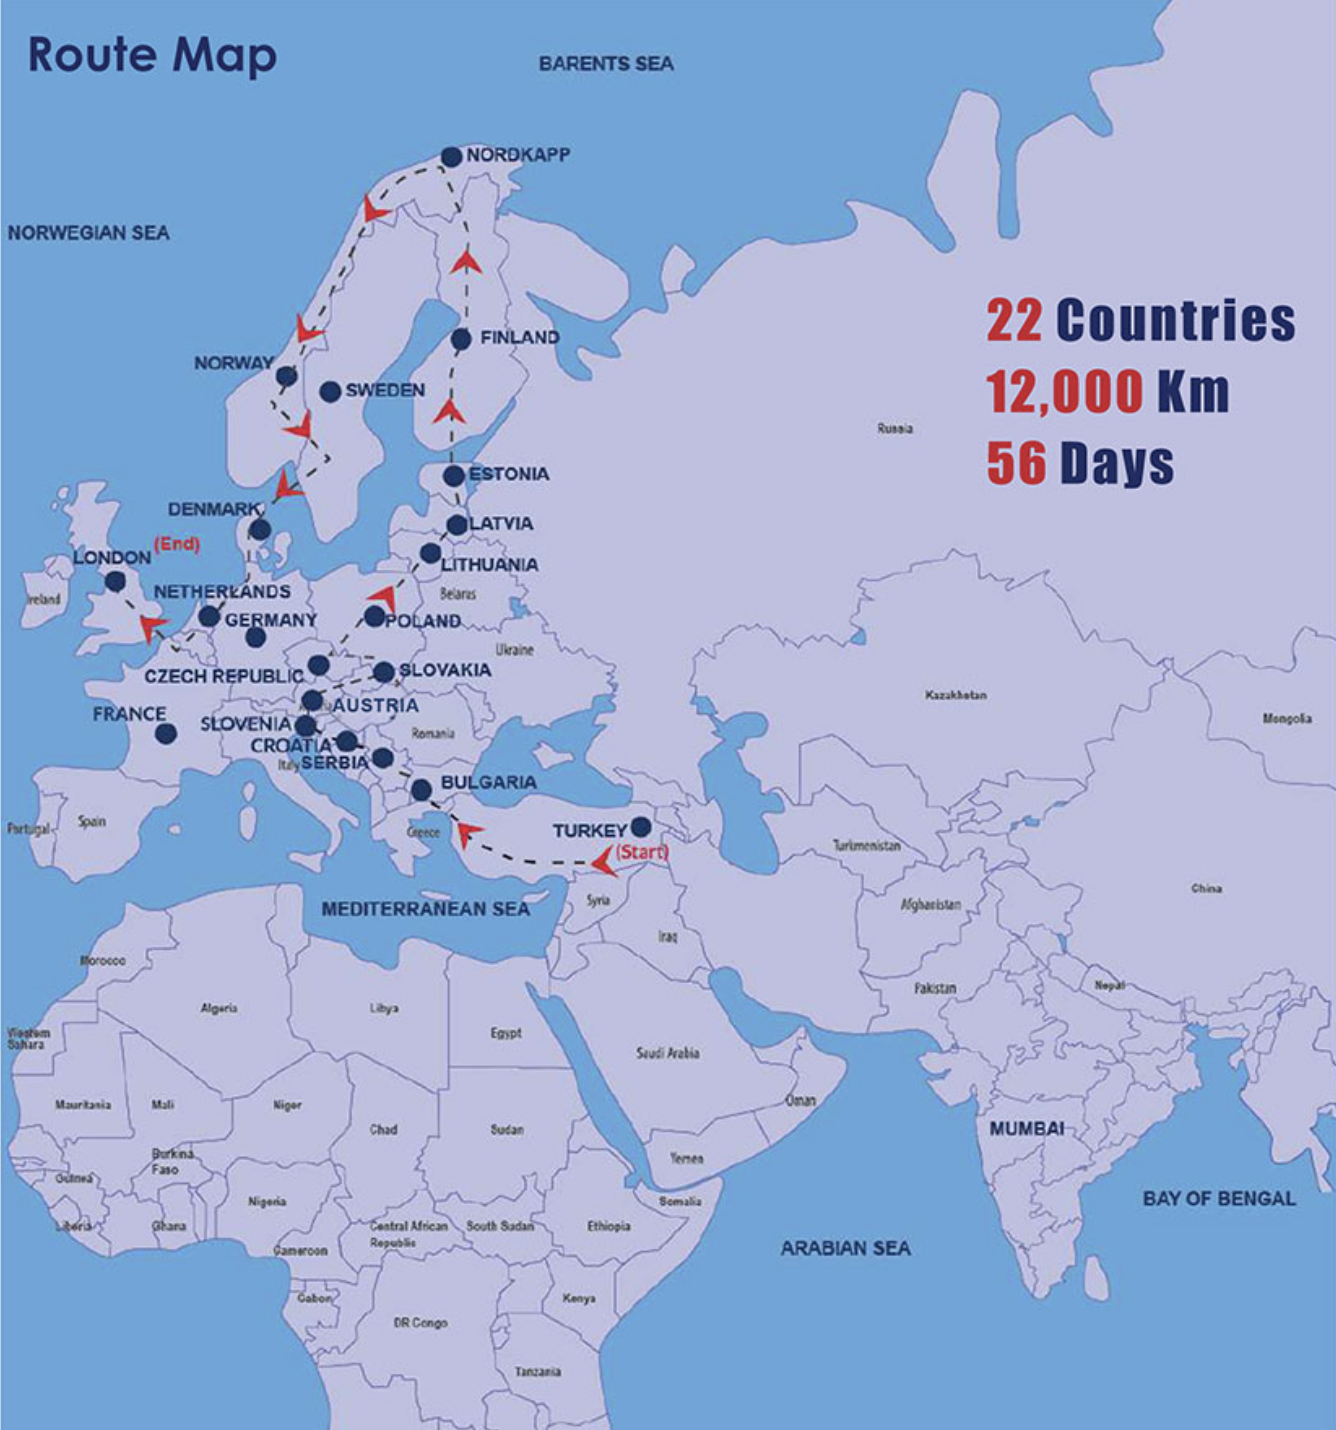 Traverser 22 pays, le plus long trajet en bus annonce un départ le 27 août 2023.